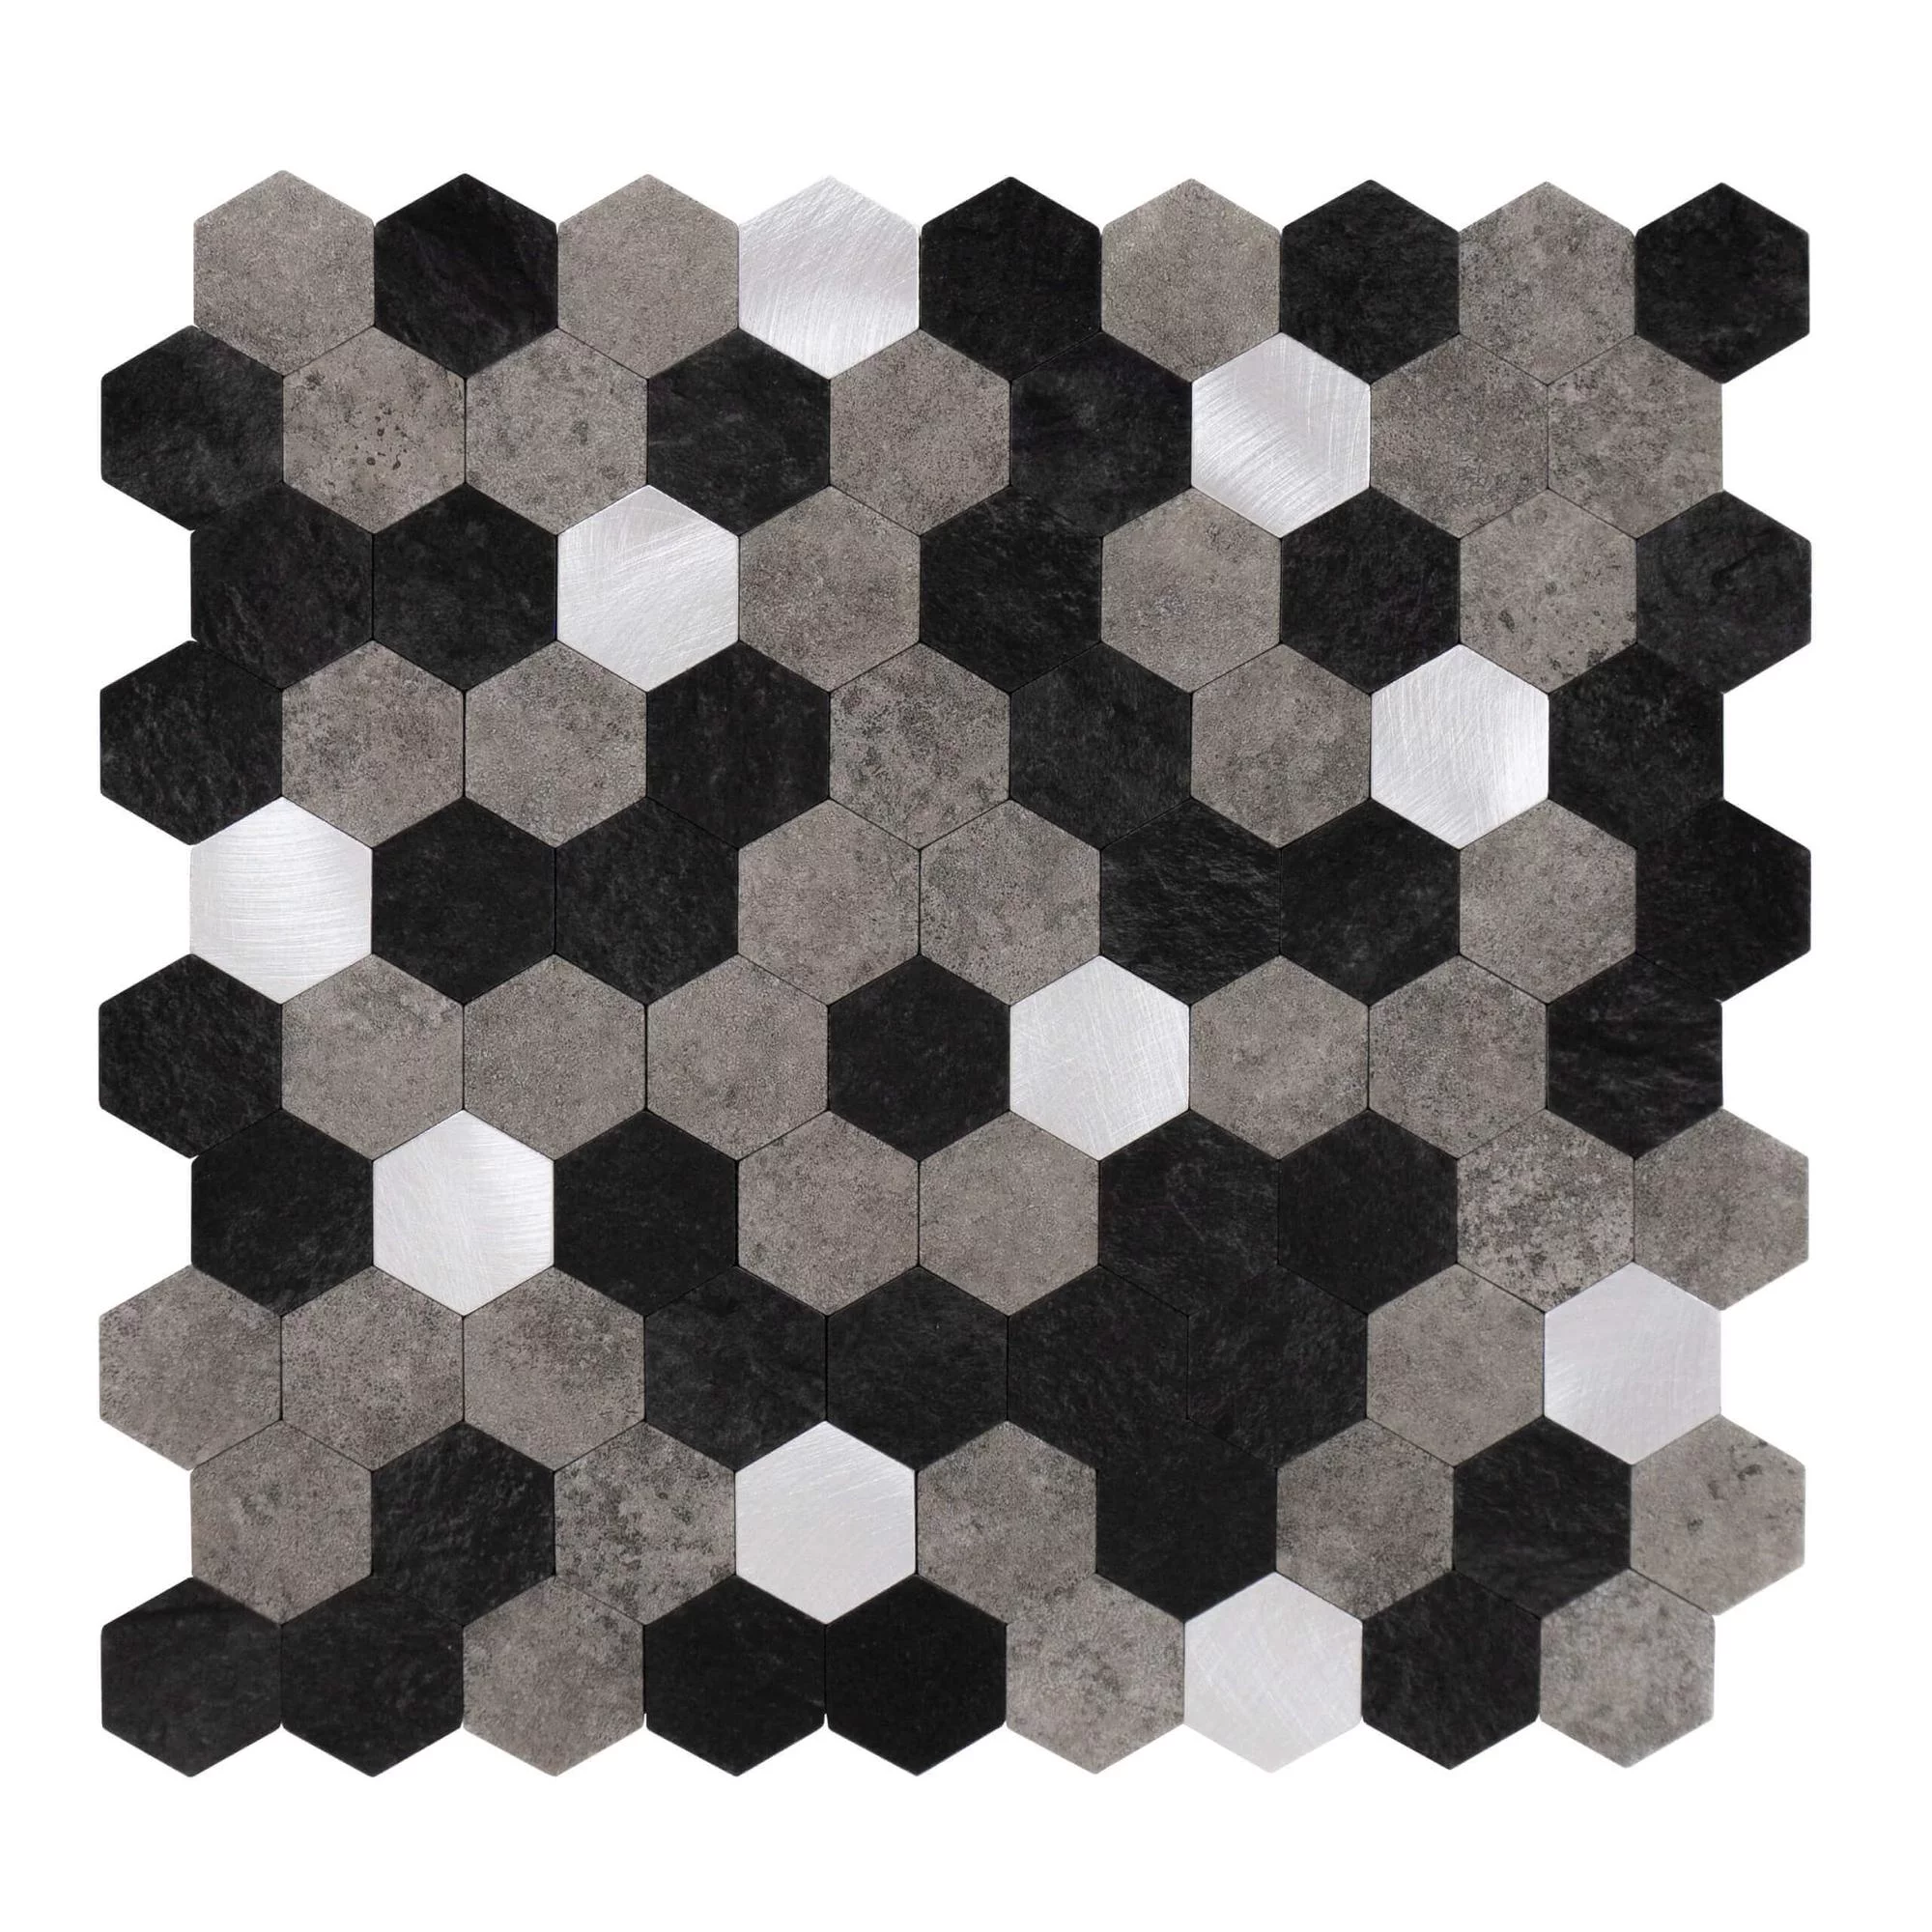 carreaux-autocollants-forme-hexagonale-0.88m².-11-pcs-aspect-pierre-noir-gris-argent